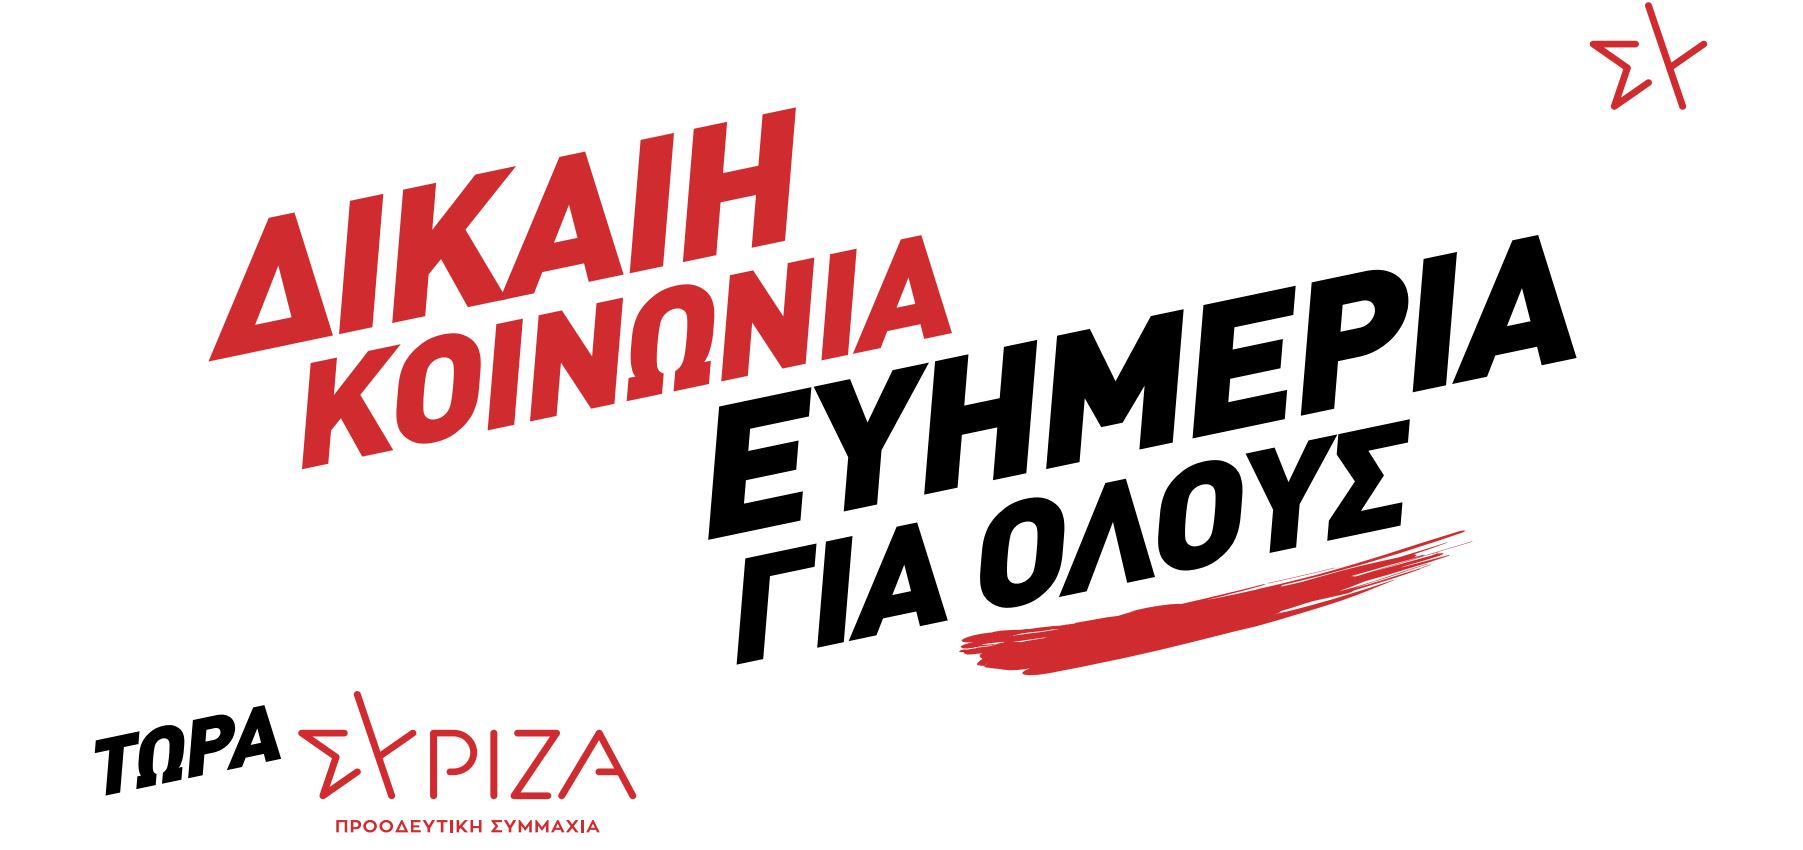 ΣΥΡΙΖΑ – ΠΣ: Το υλικό της προεκλογικής καμπάνιας – «Δίκαιη Κοινωνία – Ευημερία για όλους»